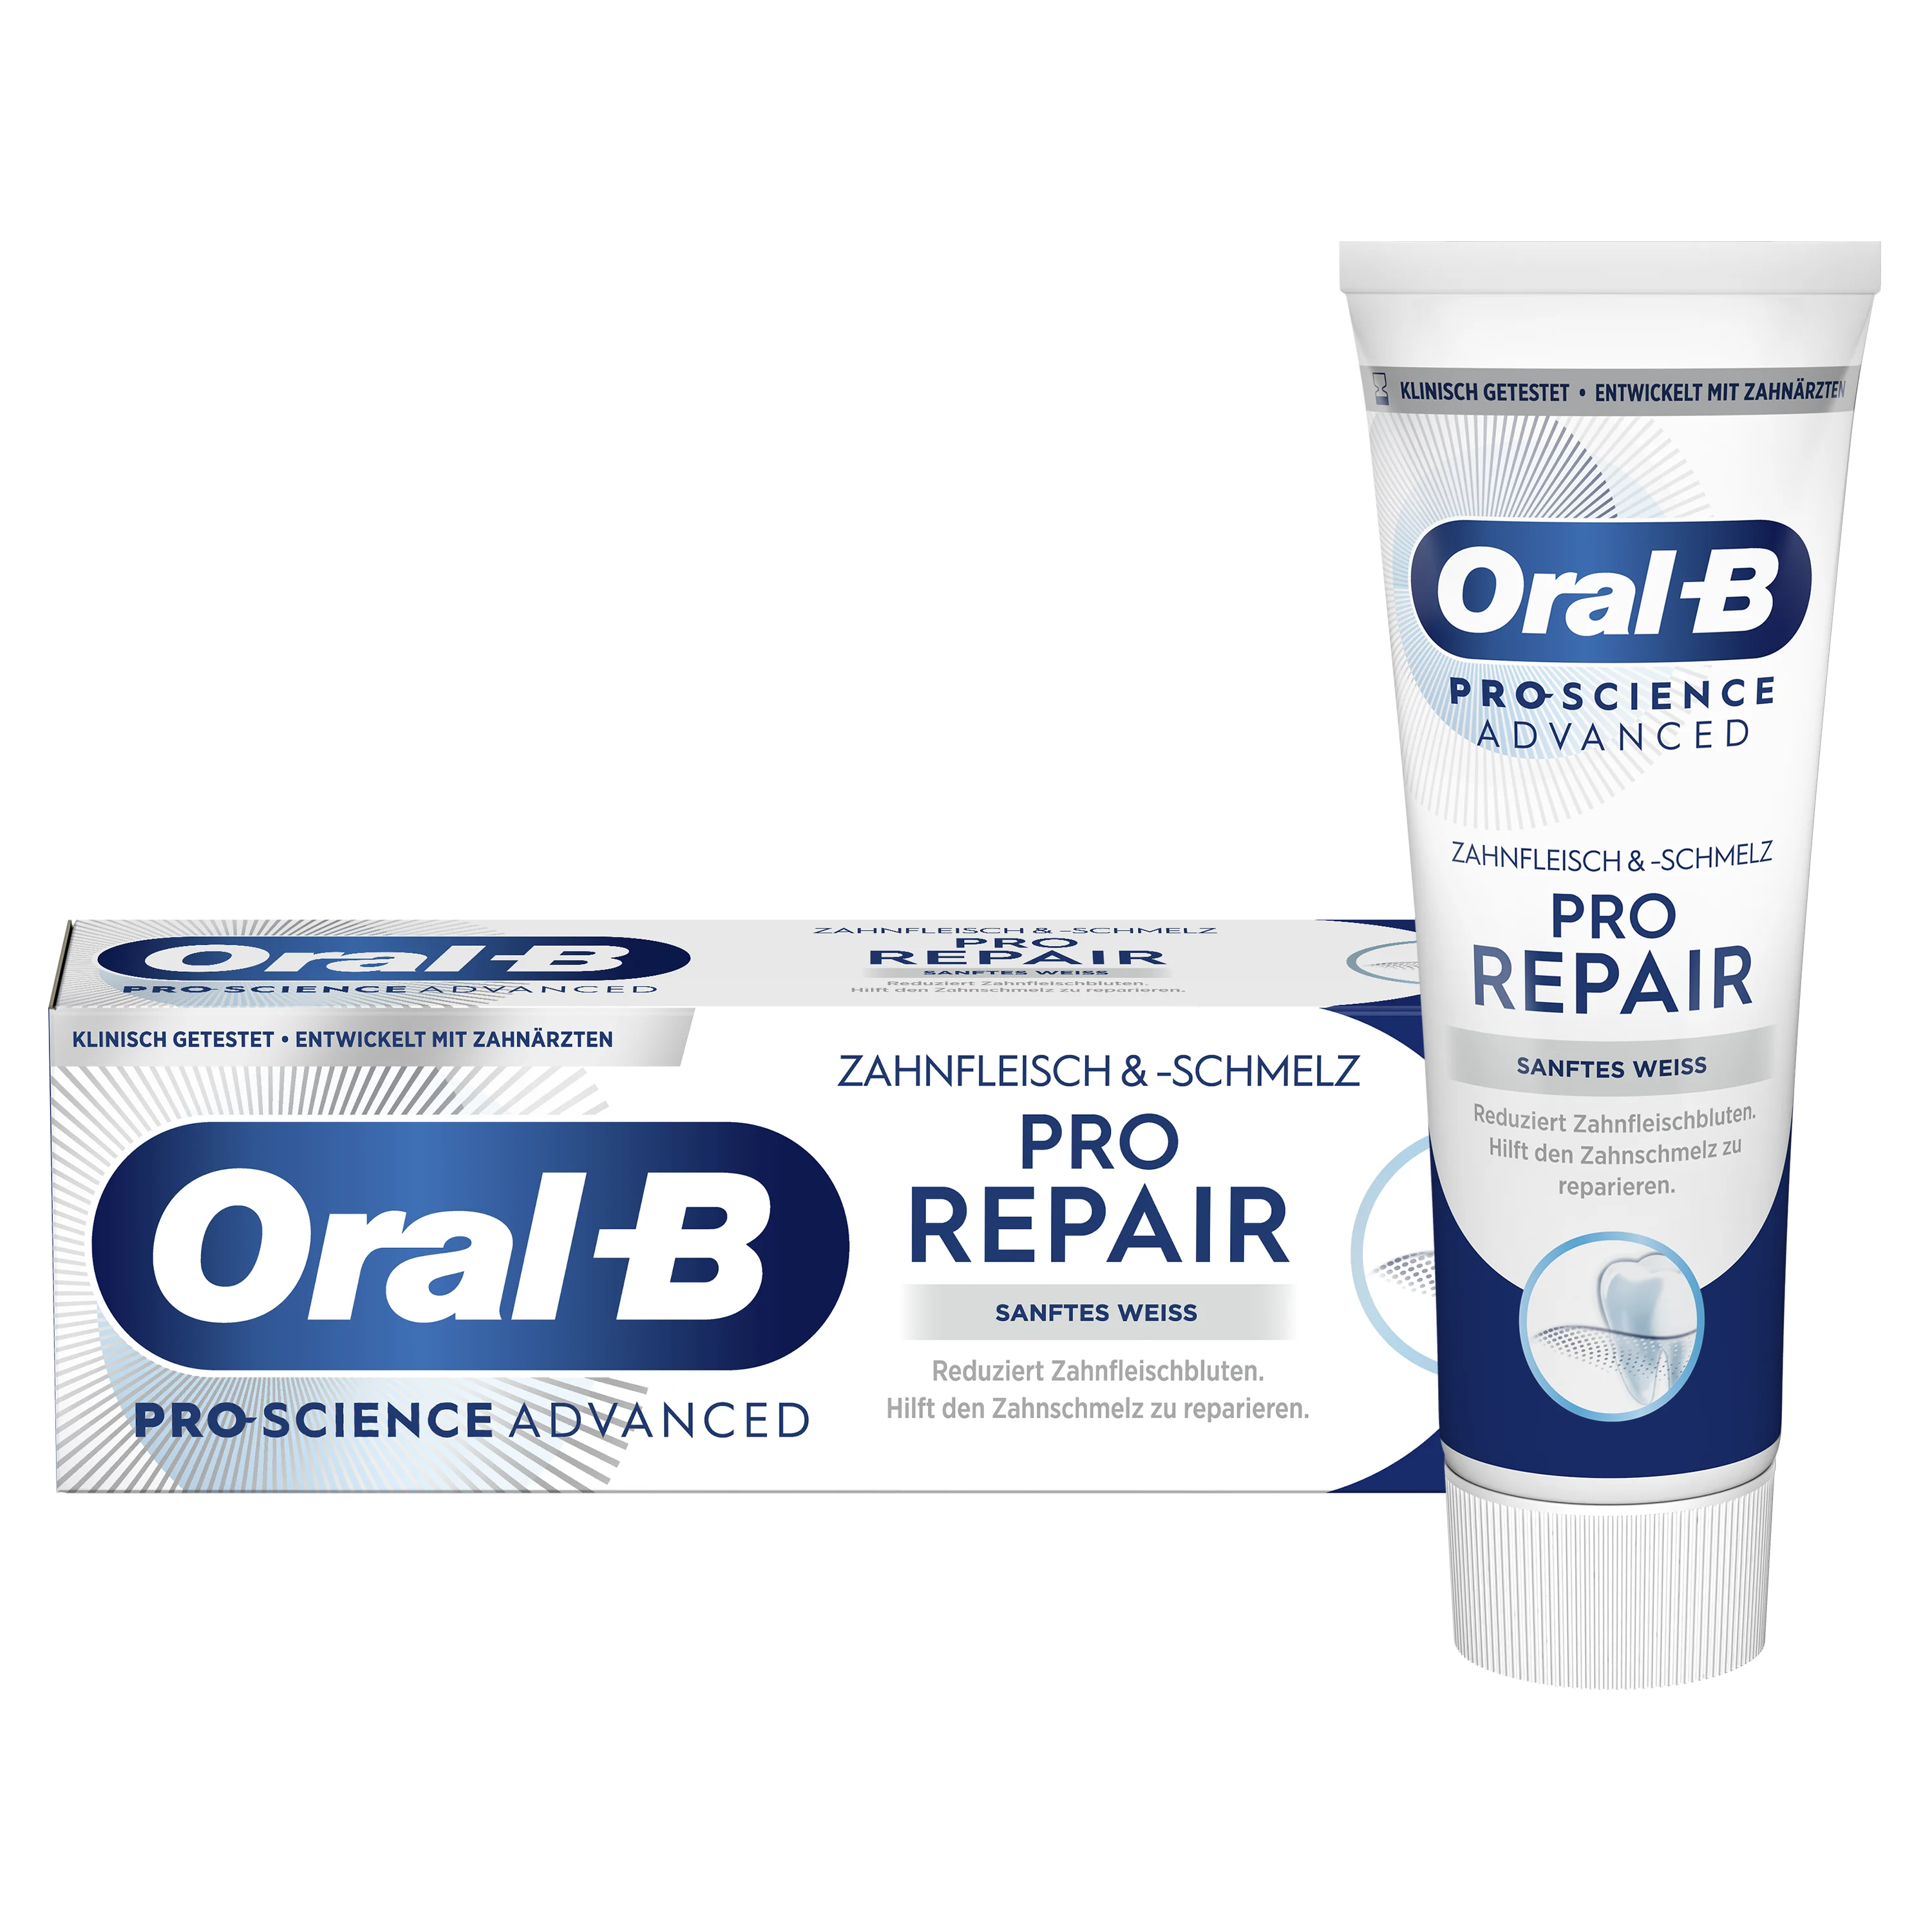 Oral-B Professional Zahnfleisch & -schmelz Pro-Repair Sanftes Weiß Zahncreme 